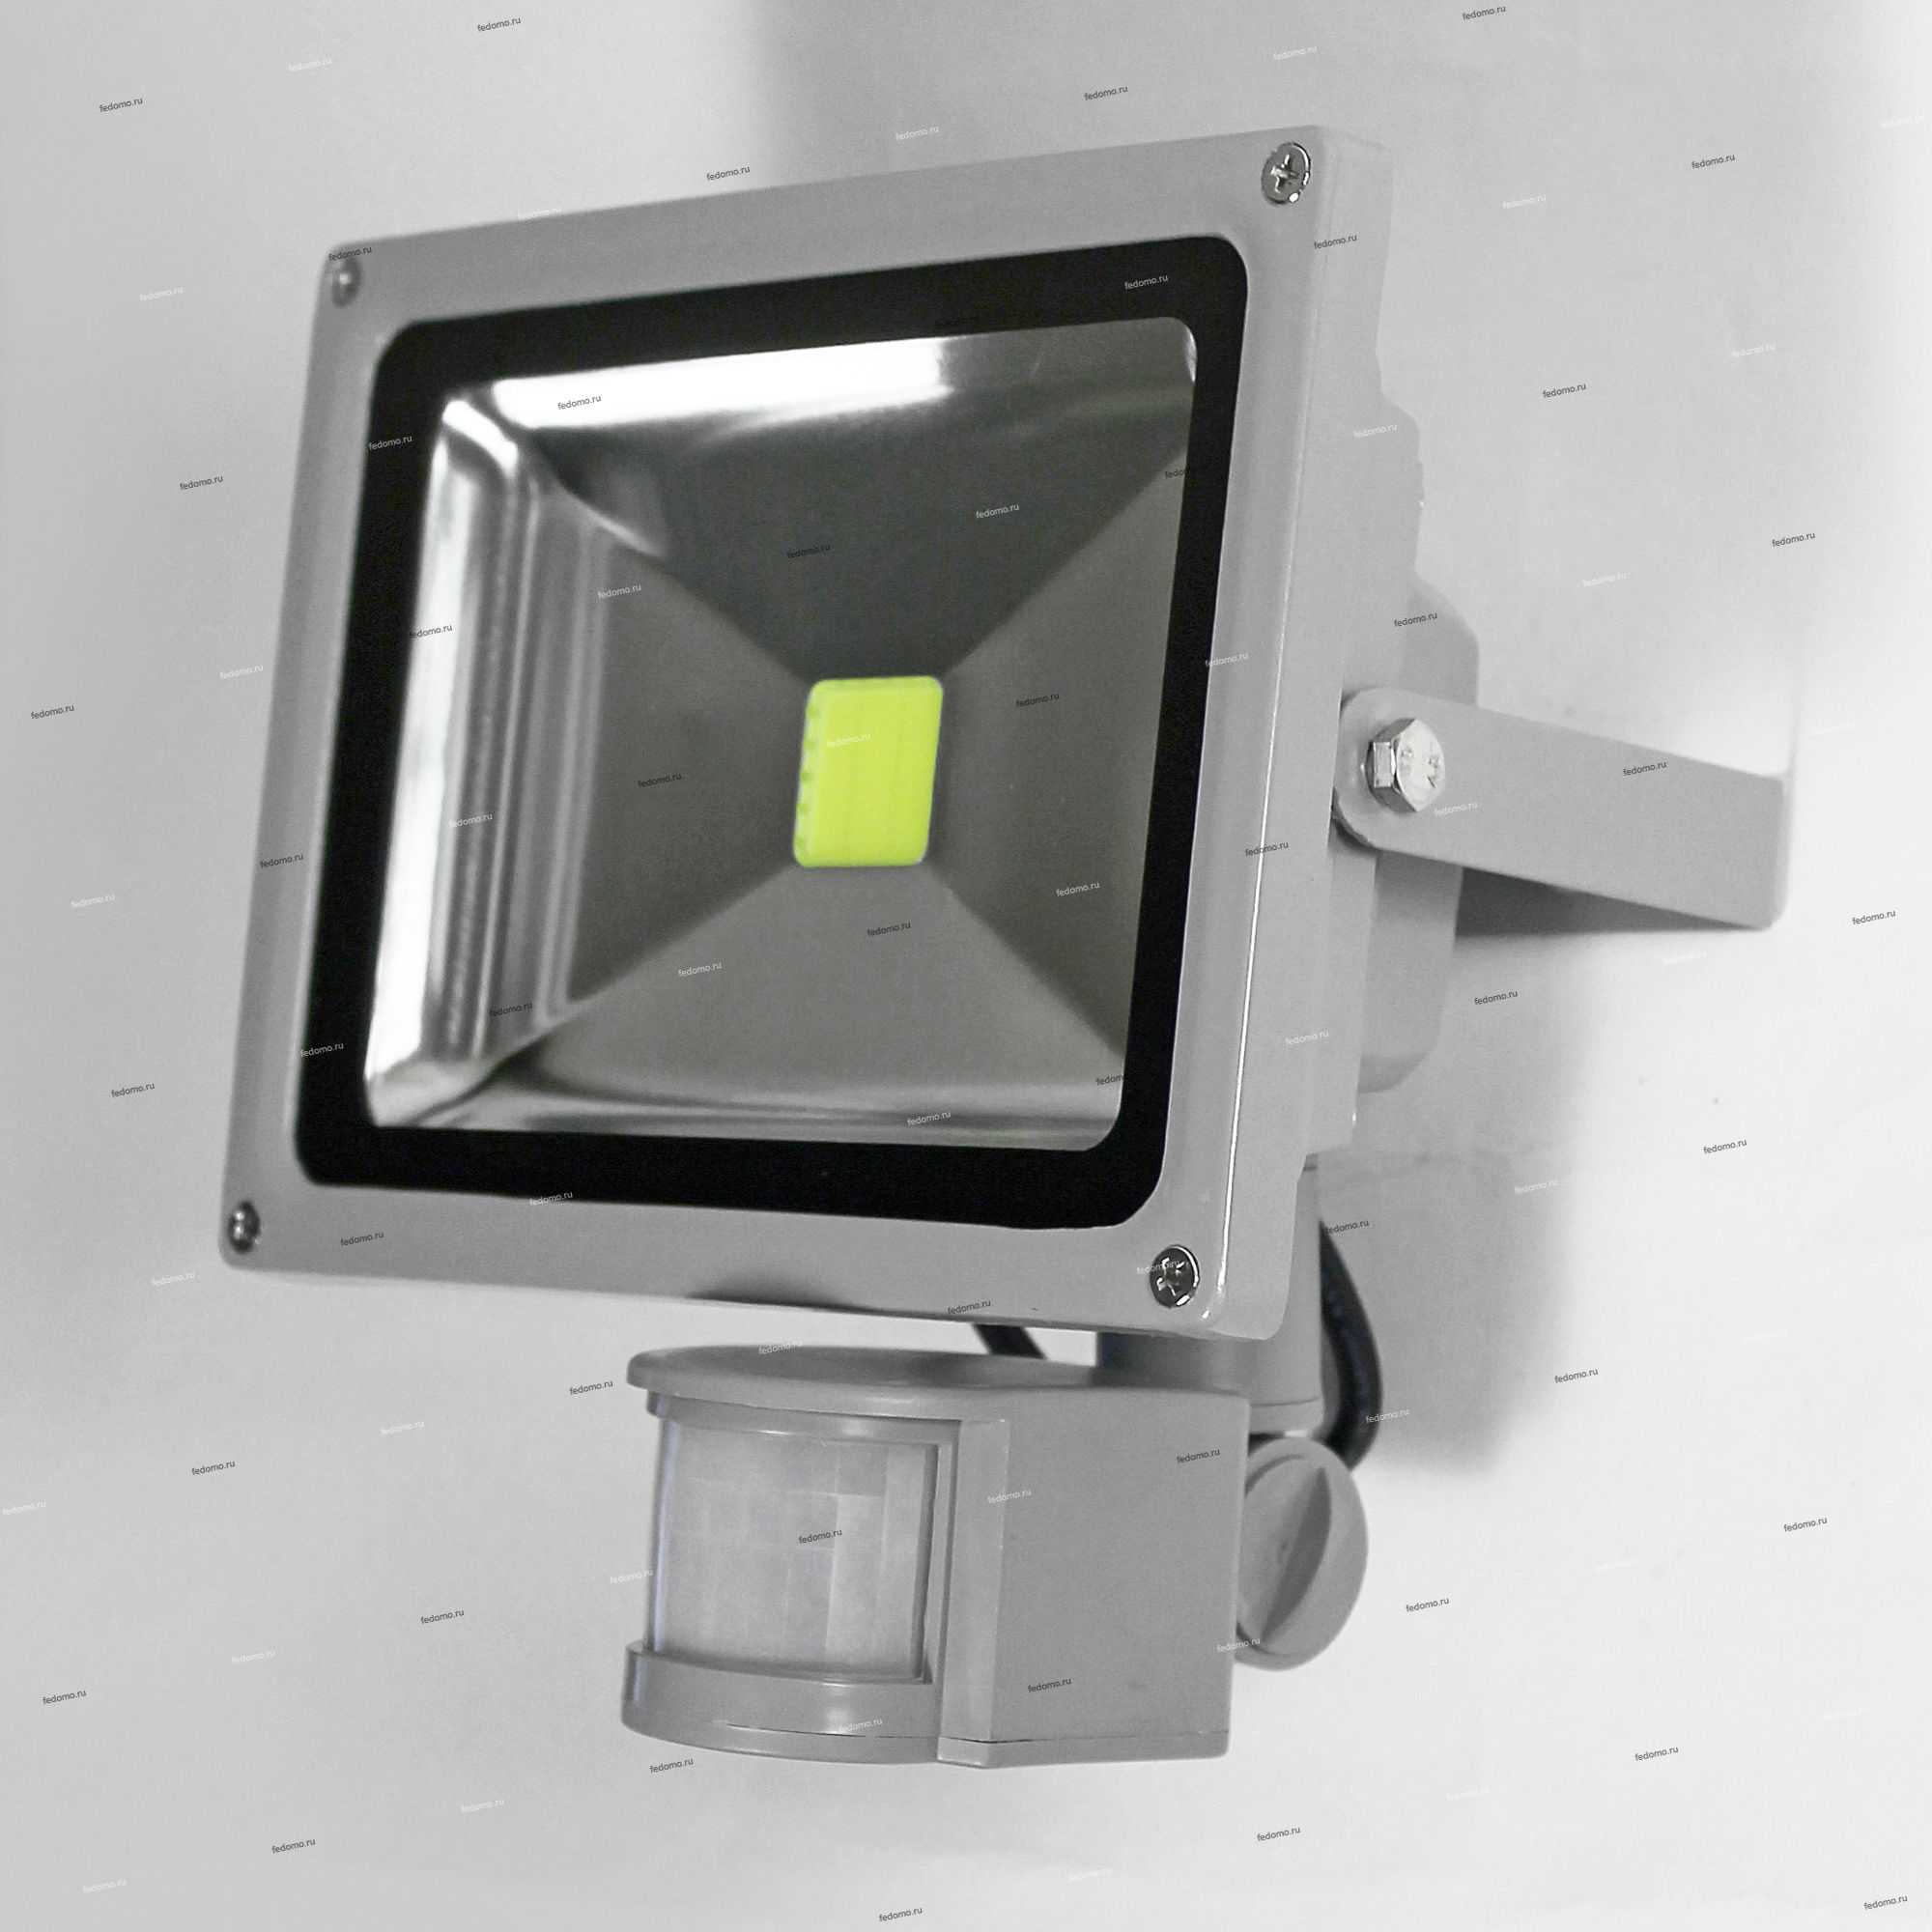 Как выбрать и установить светодиодный прожектор со встроенным датчиком движения